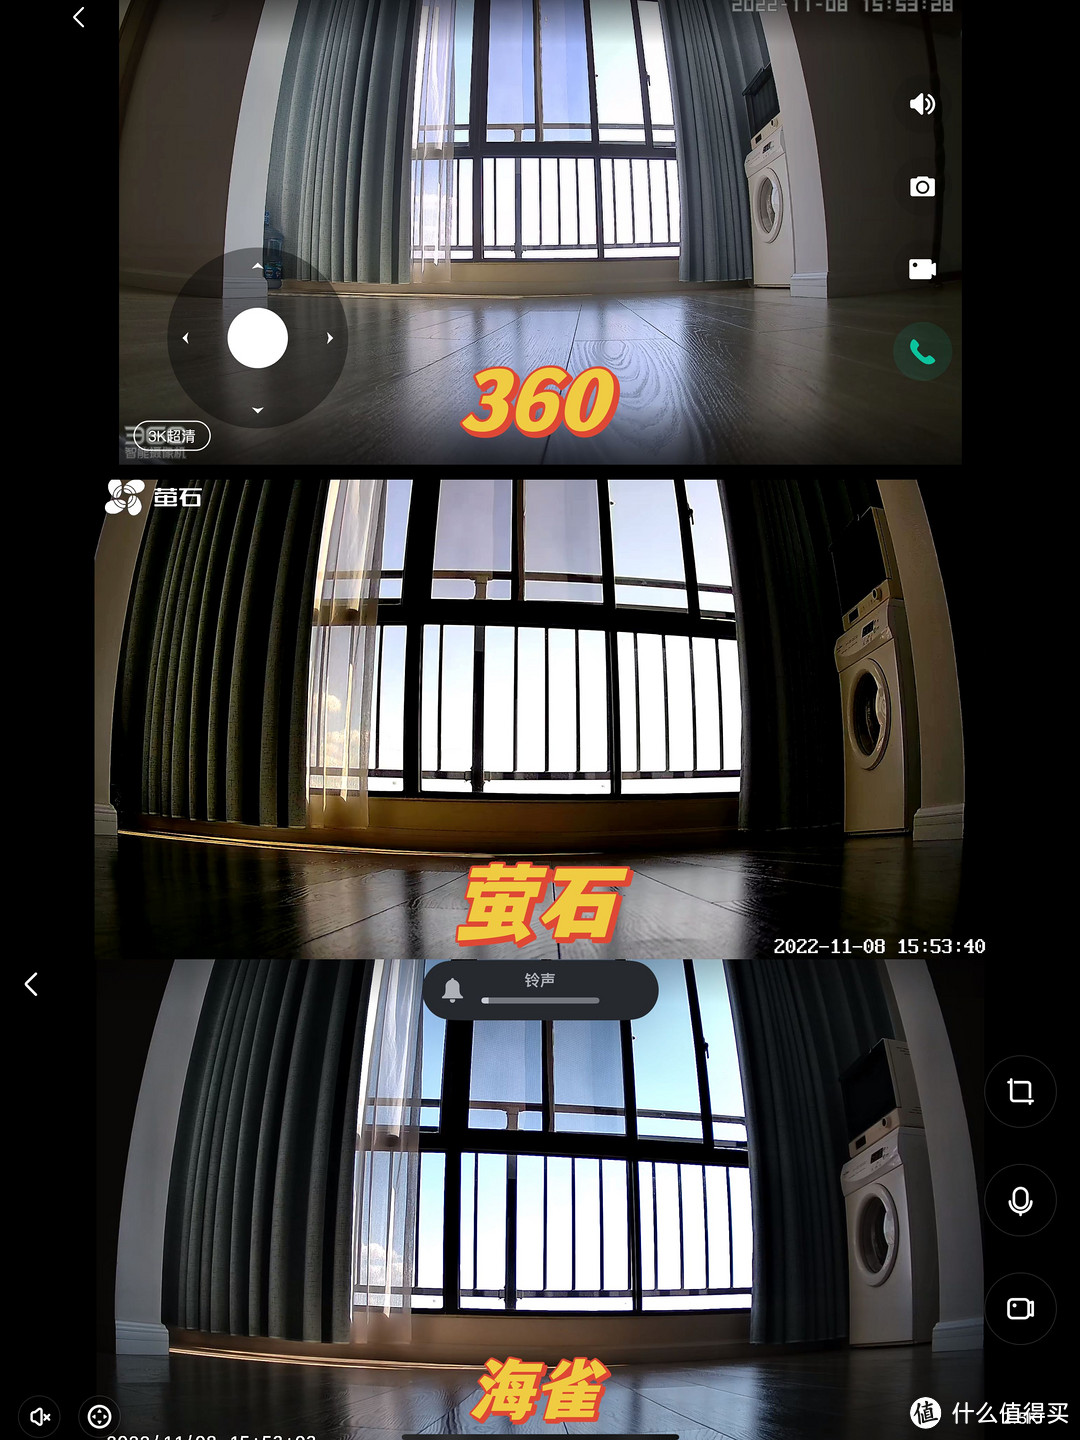 安防云台智能摄像机保护家庭安全，双11怎么选。360摄像机、华为、萤石 横评来了。